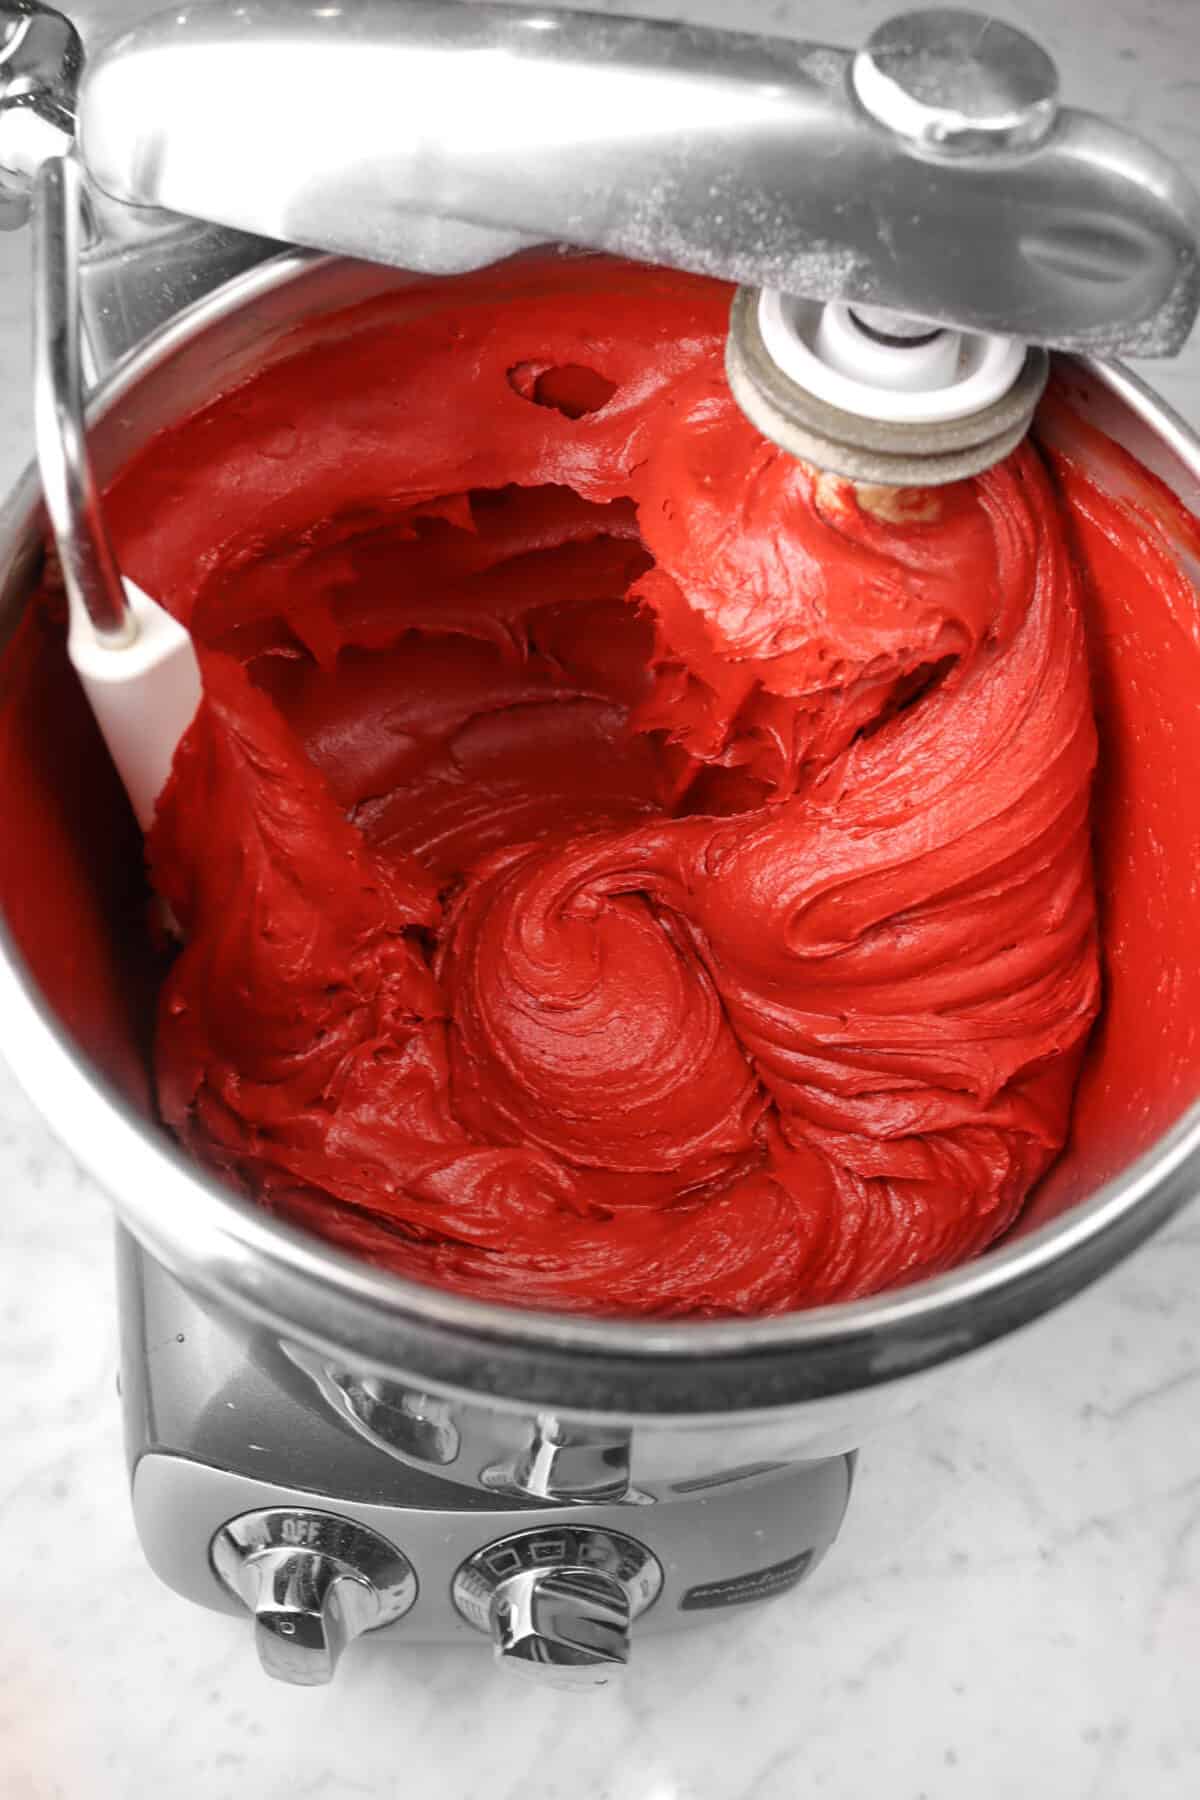 red velvet cake batter in a mixer bowl